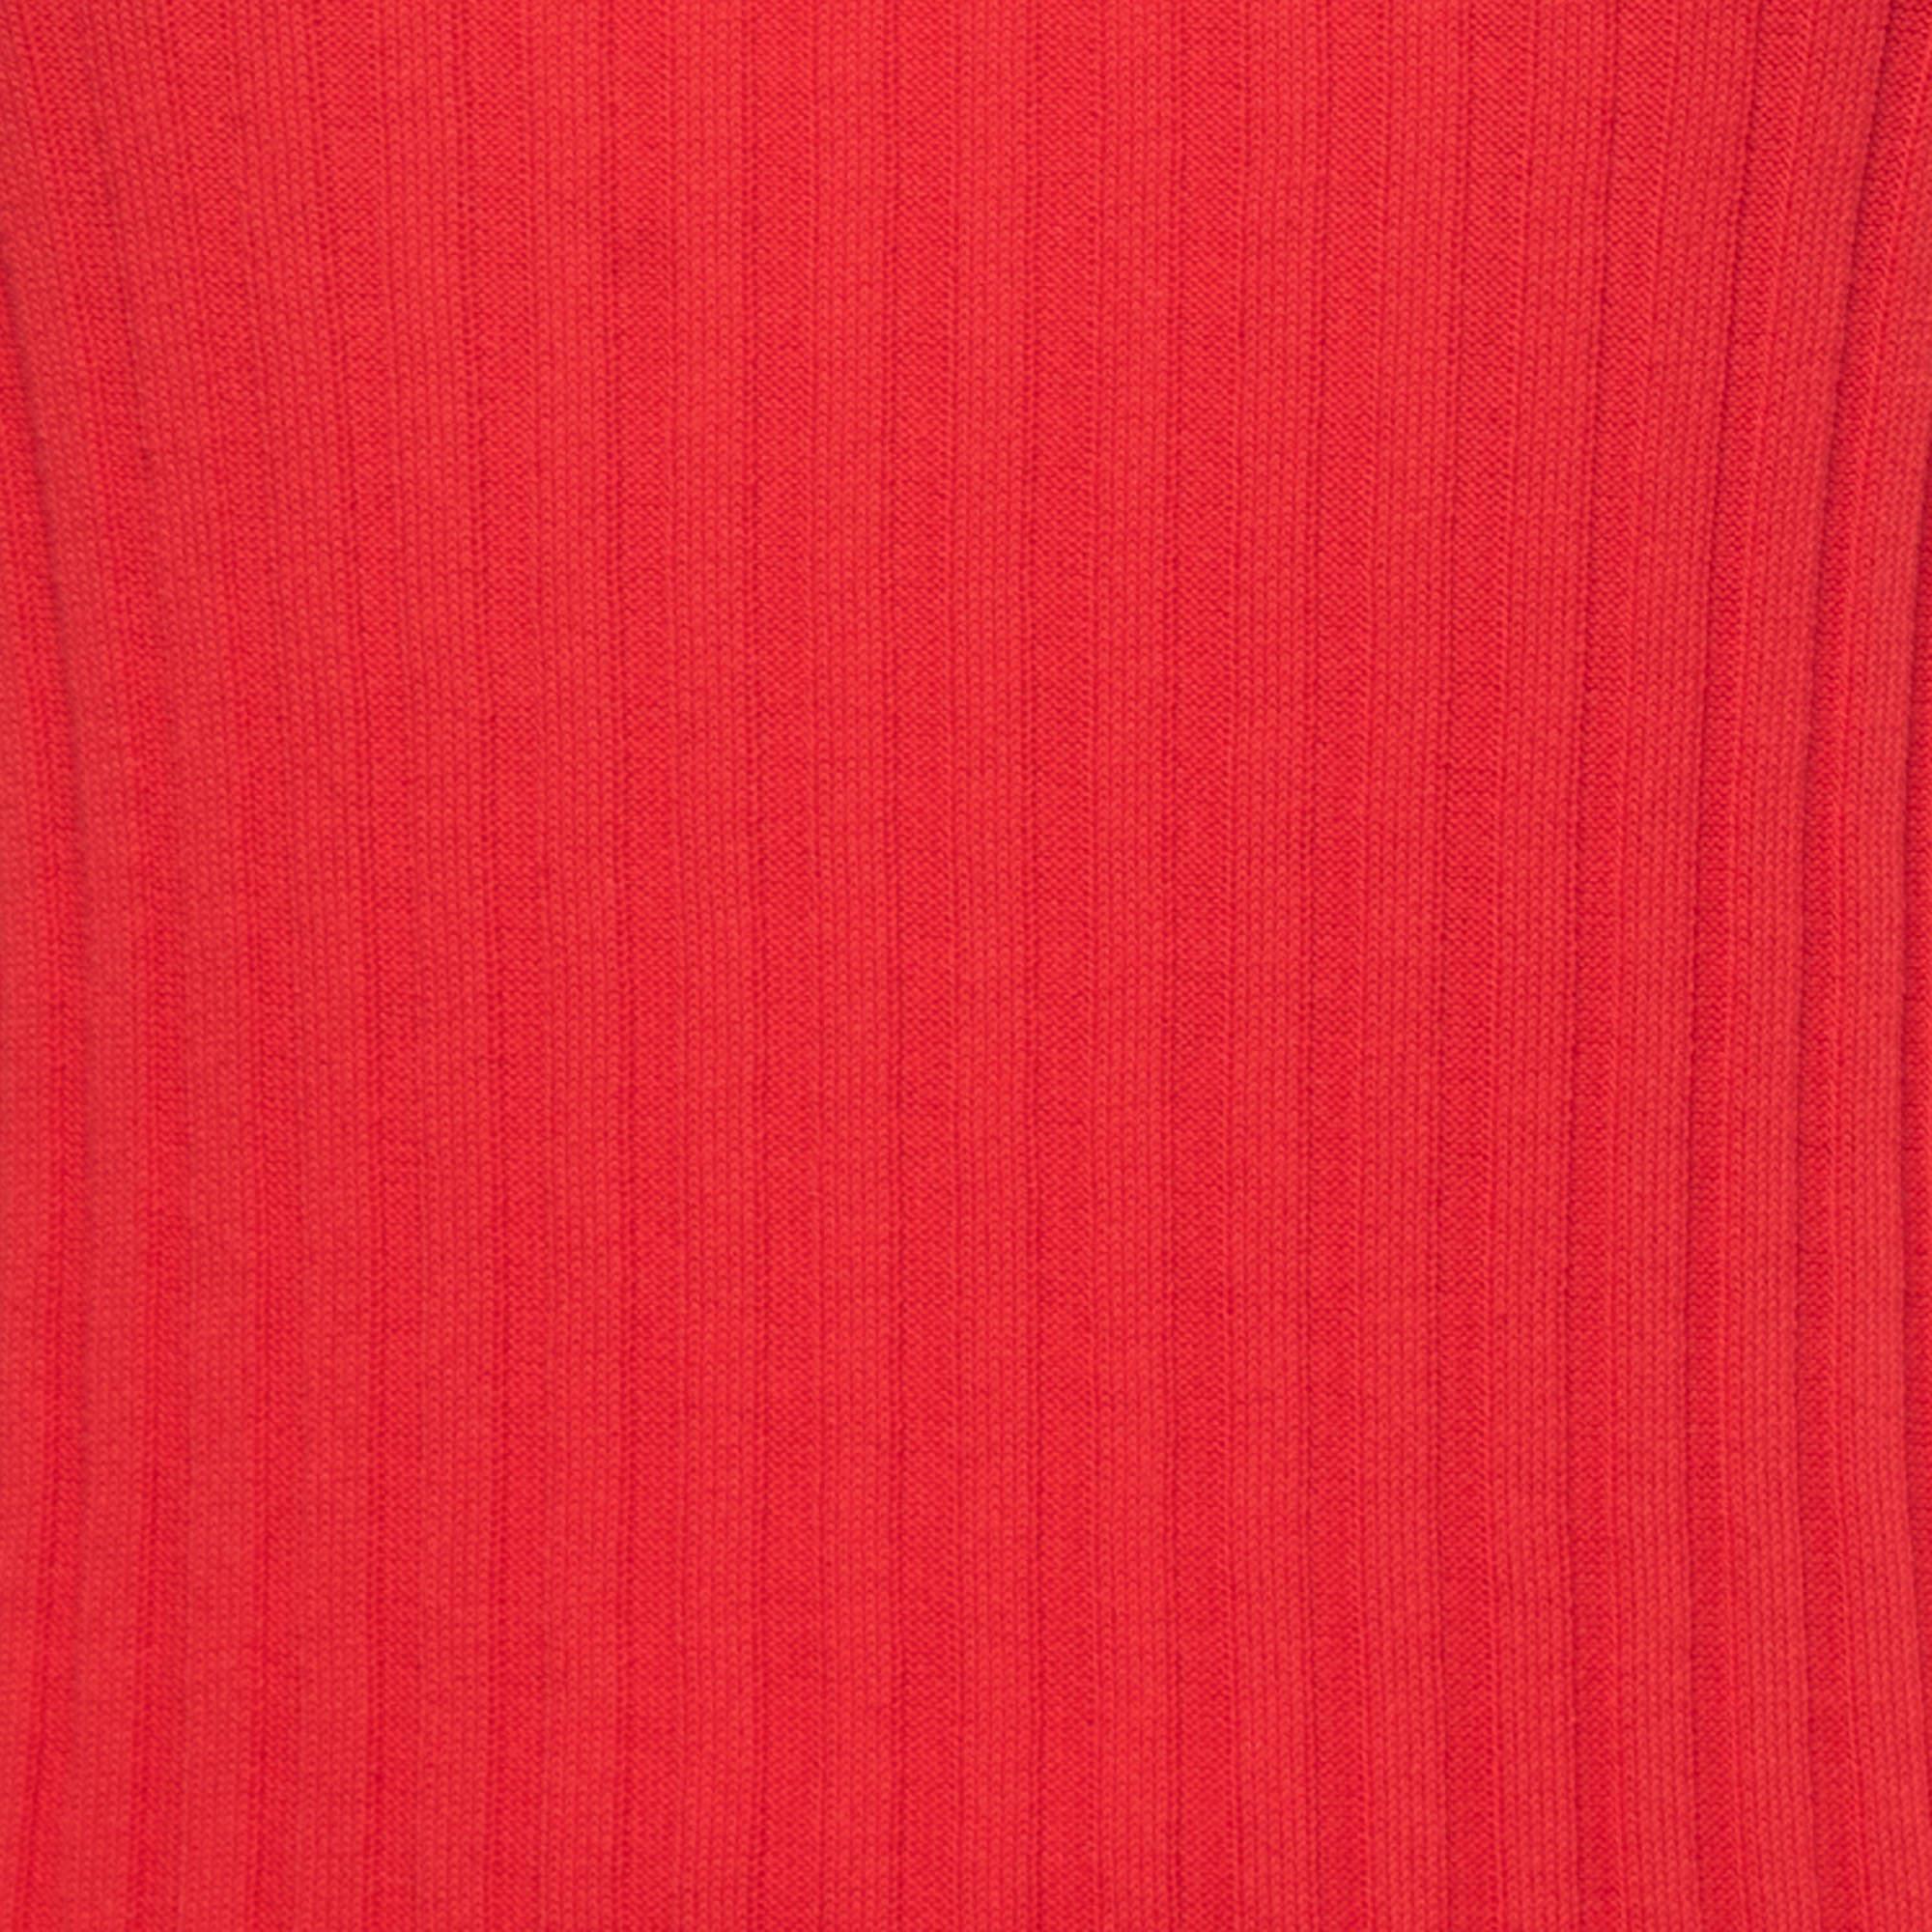 Dolce & Gabbana Red Cotton Rib Knit Tank Top M In Good Condition For Sale In Dubai, Al Qouz 2